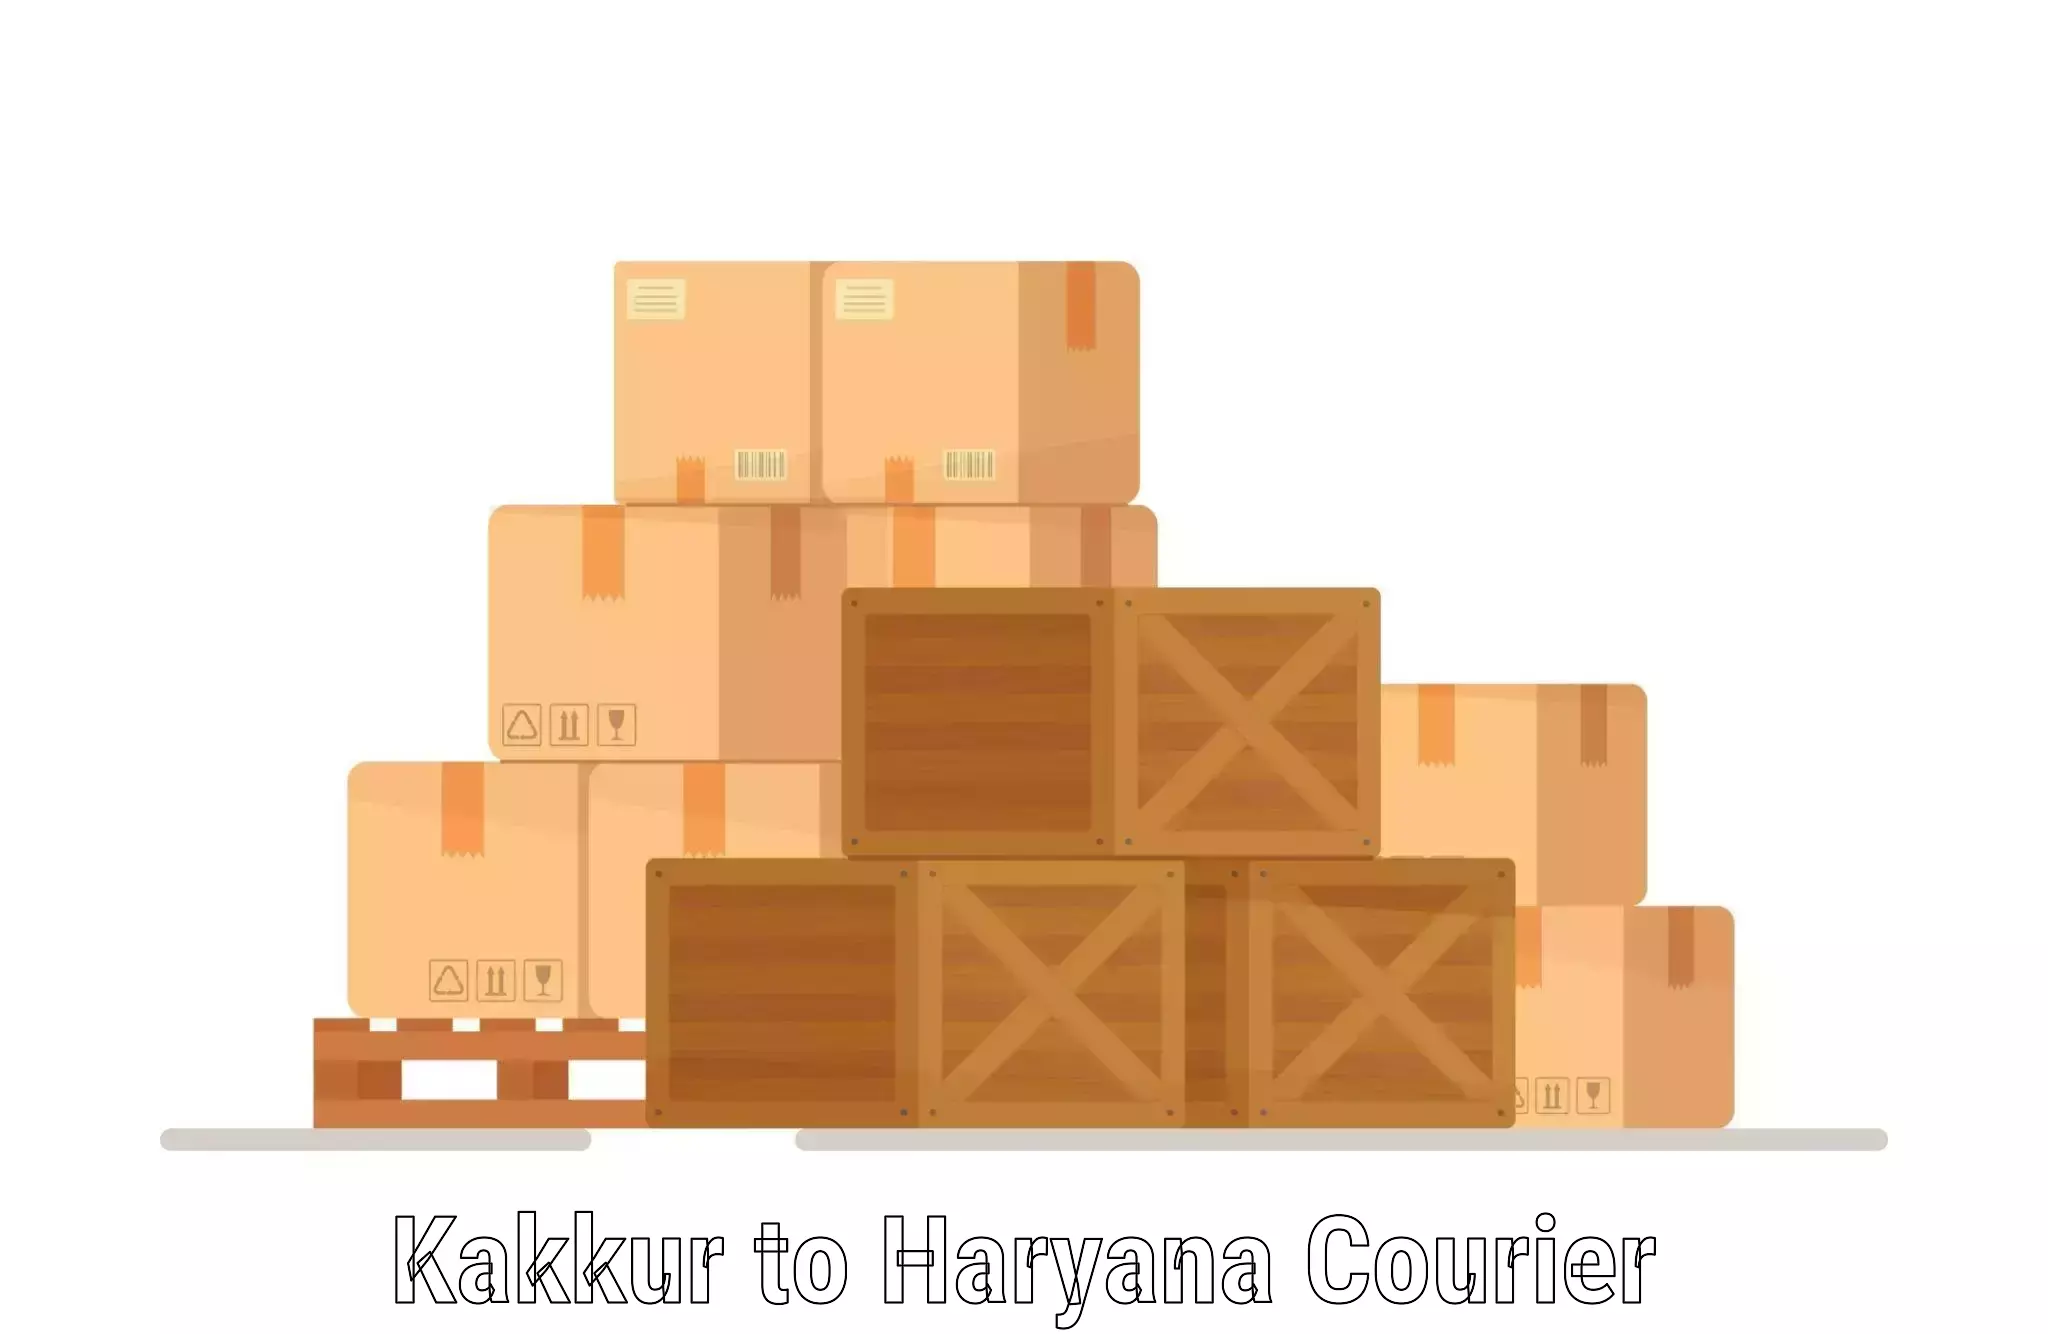 Next-day freight services Kakkur to Hodal